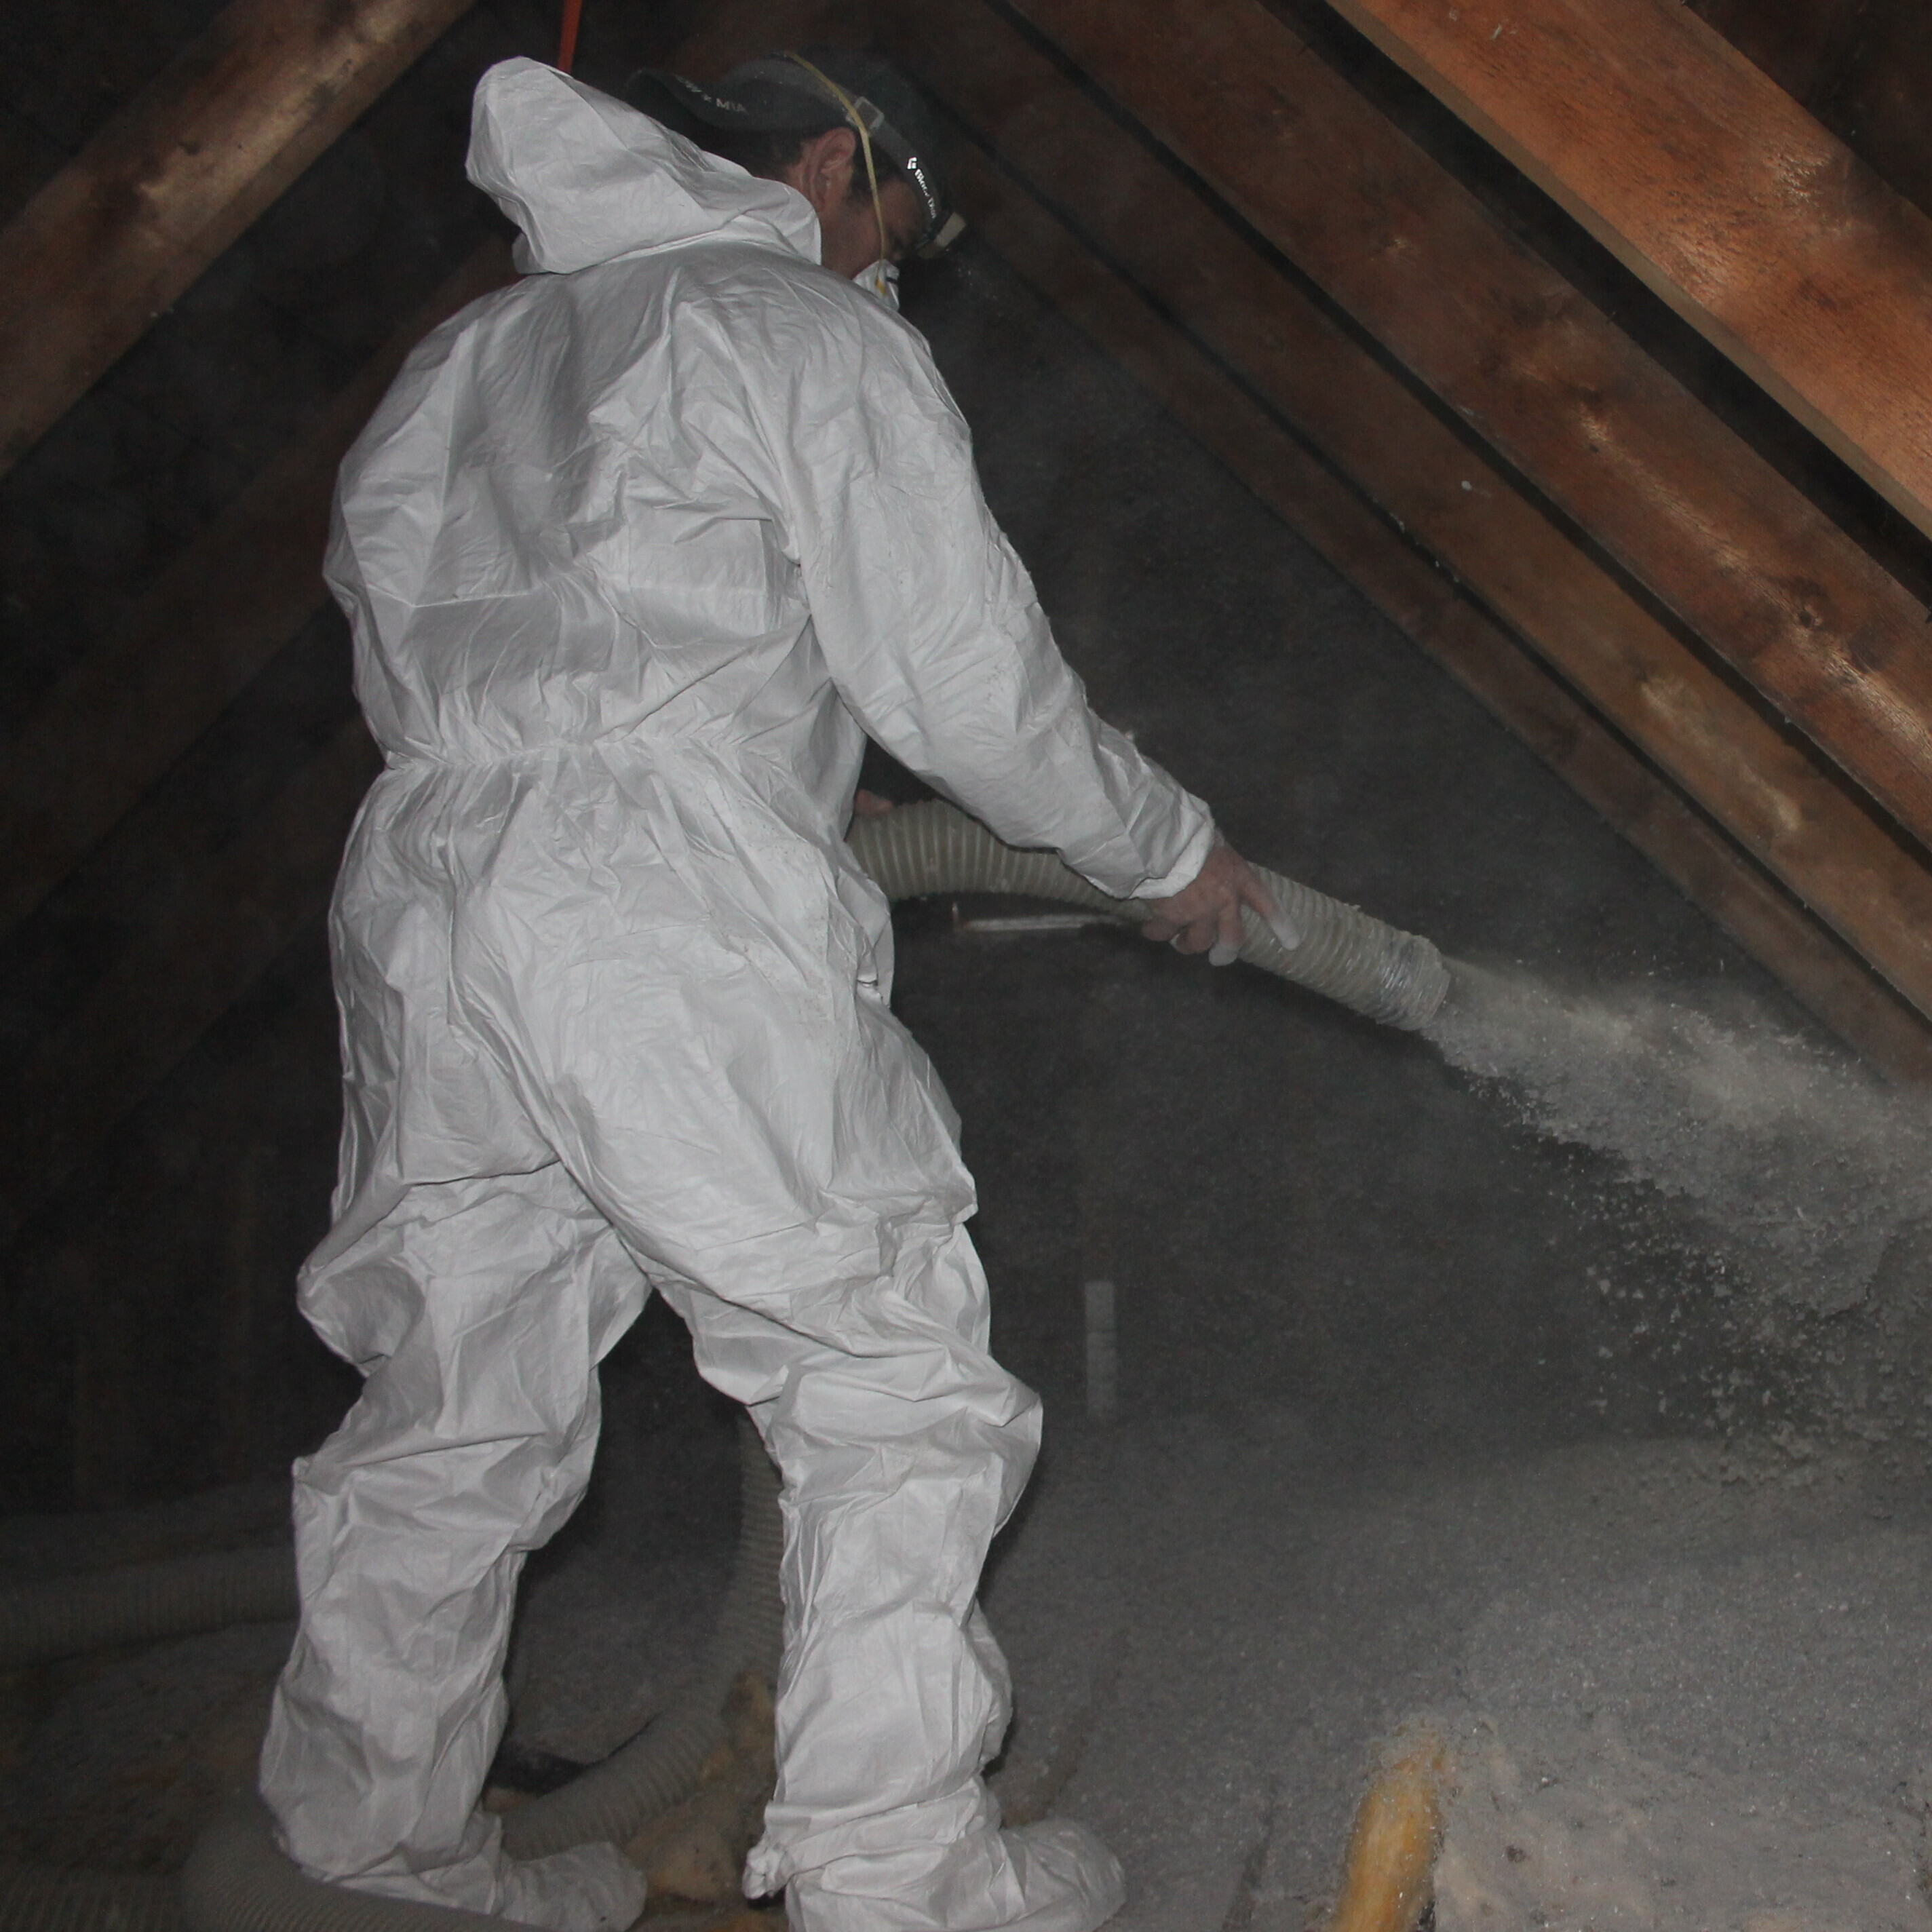 Person insulating attic